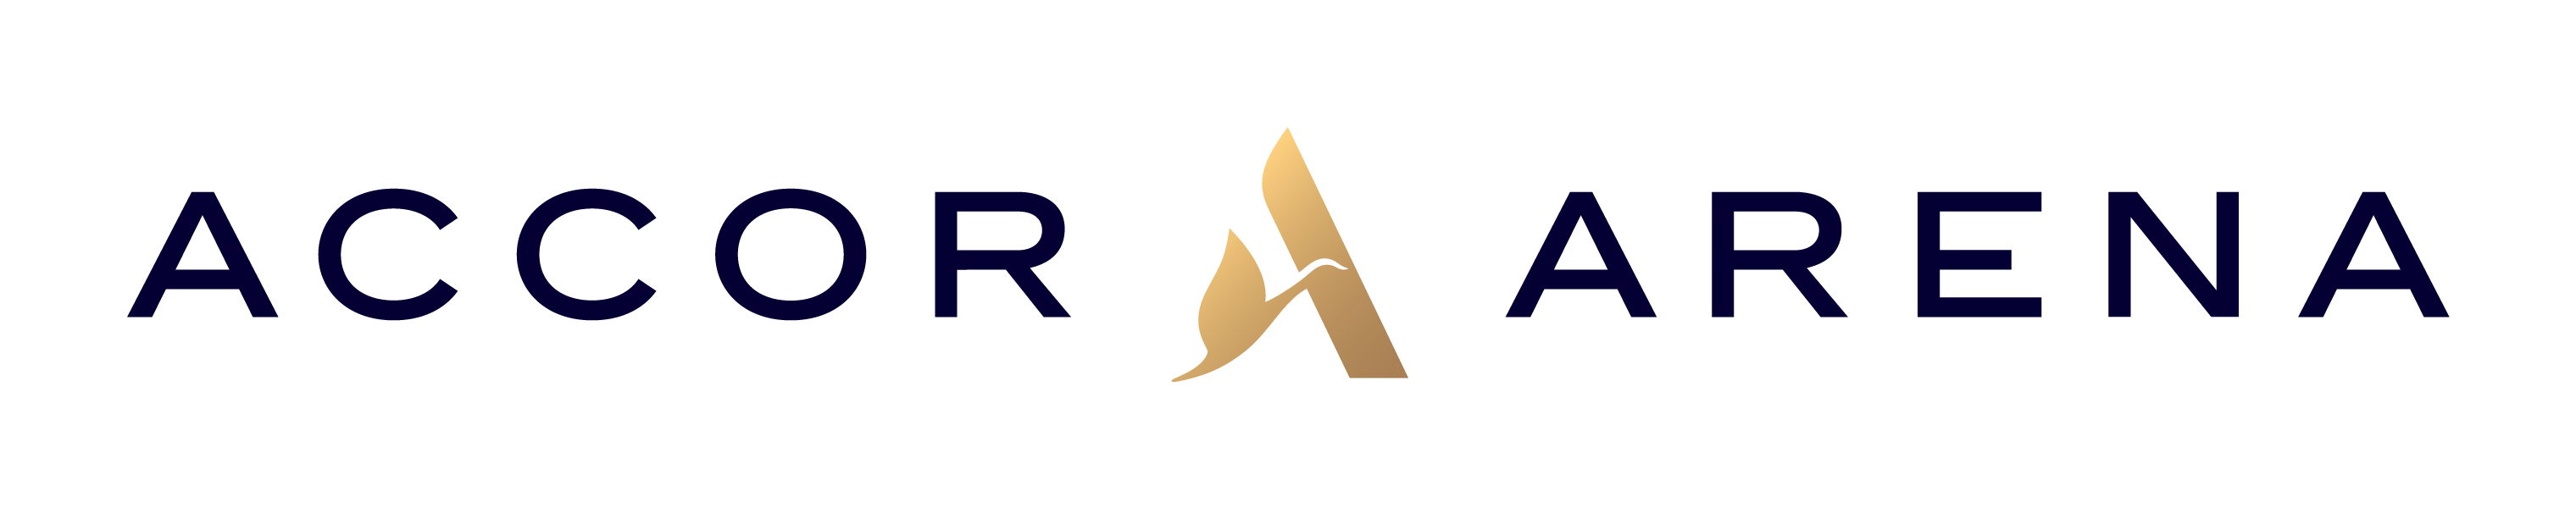 Logo Accor Arena